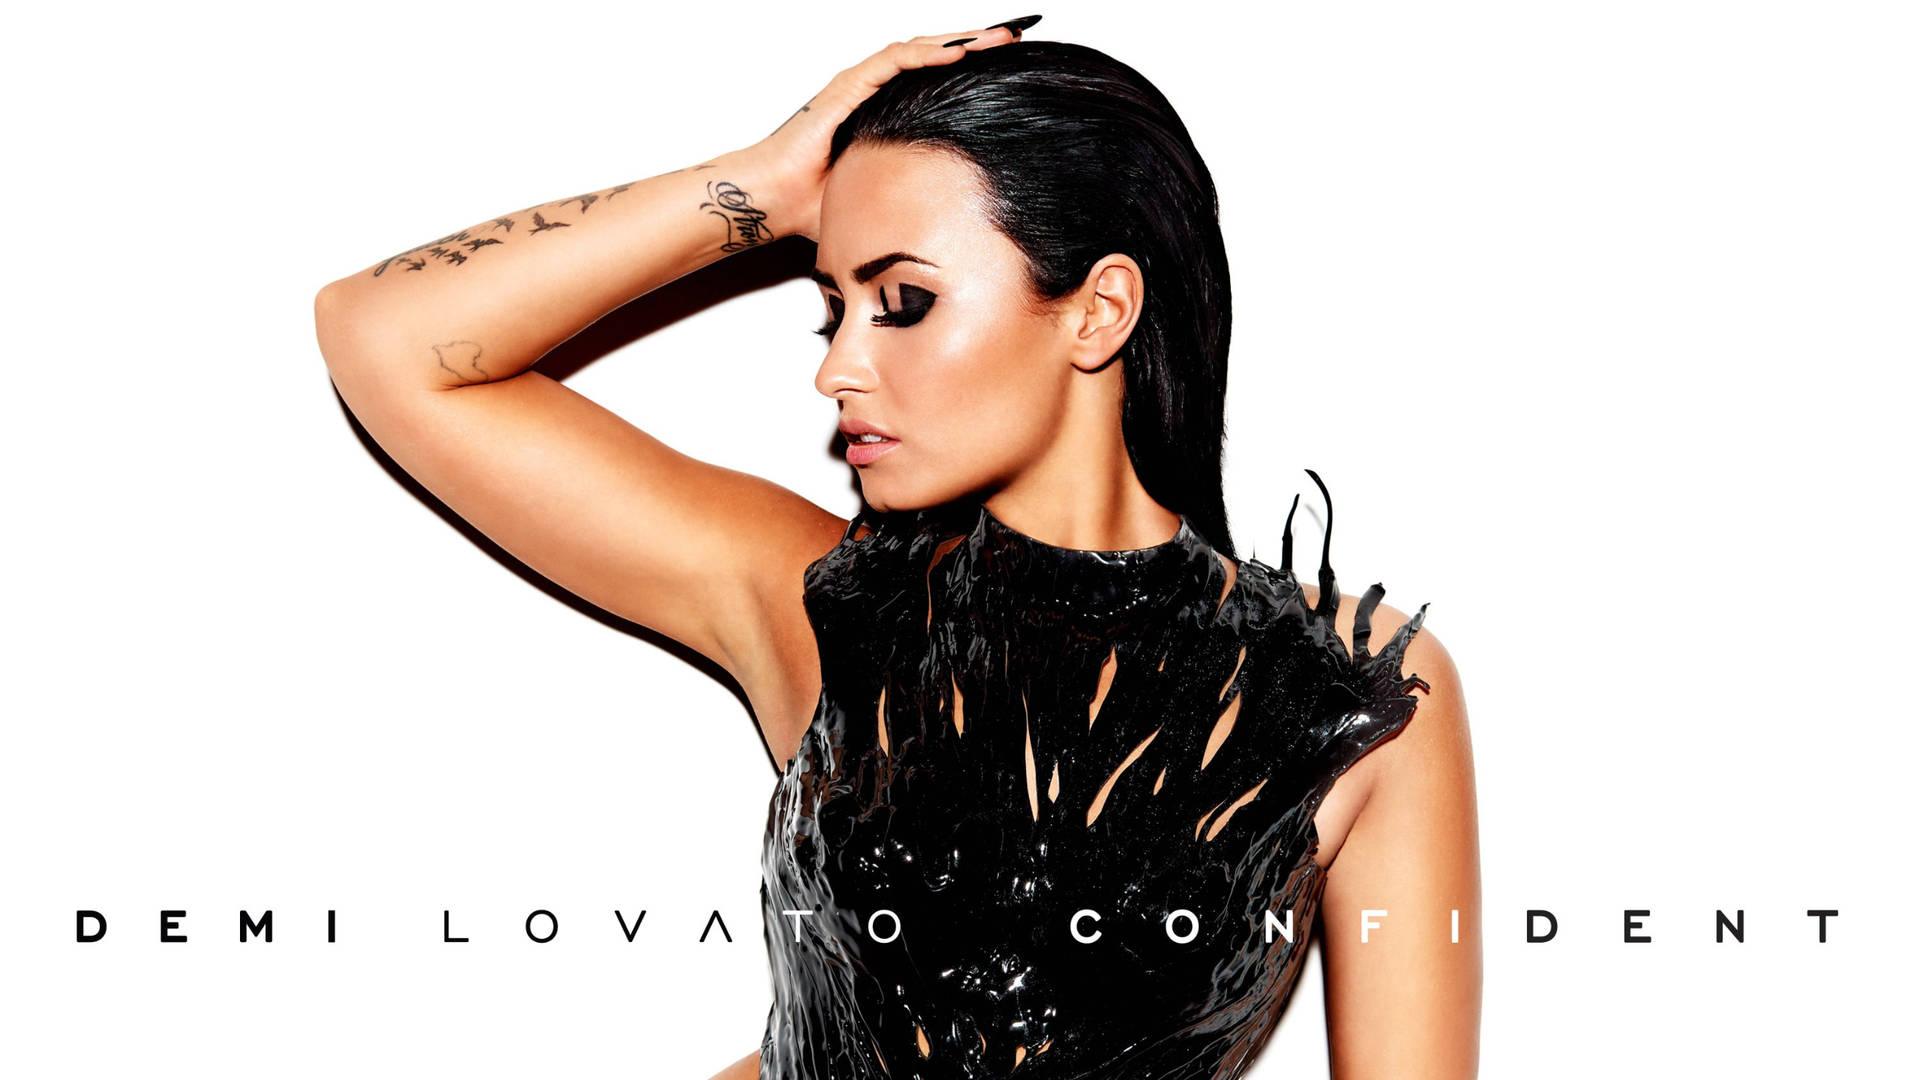 Demi Lovato Confident Background